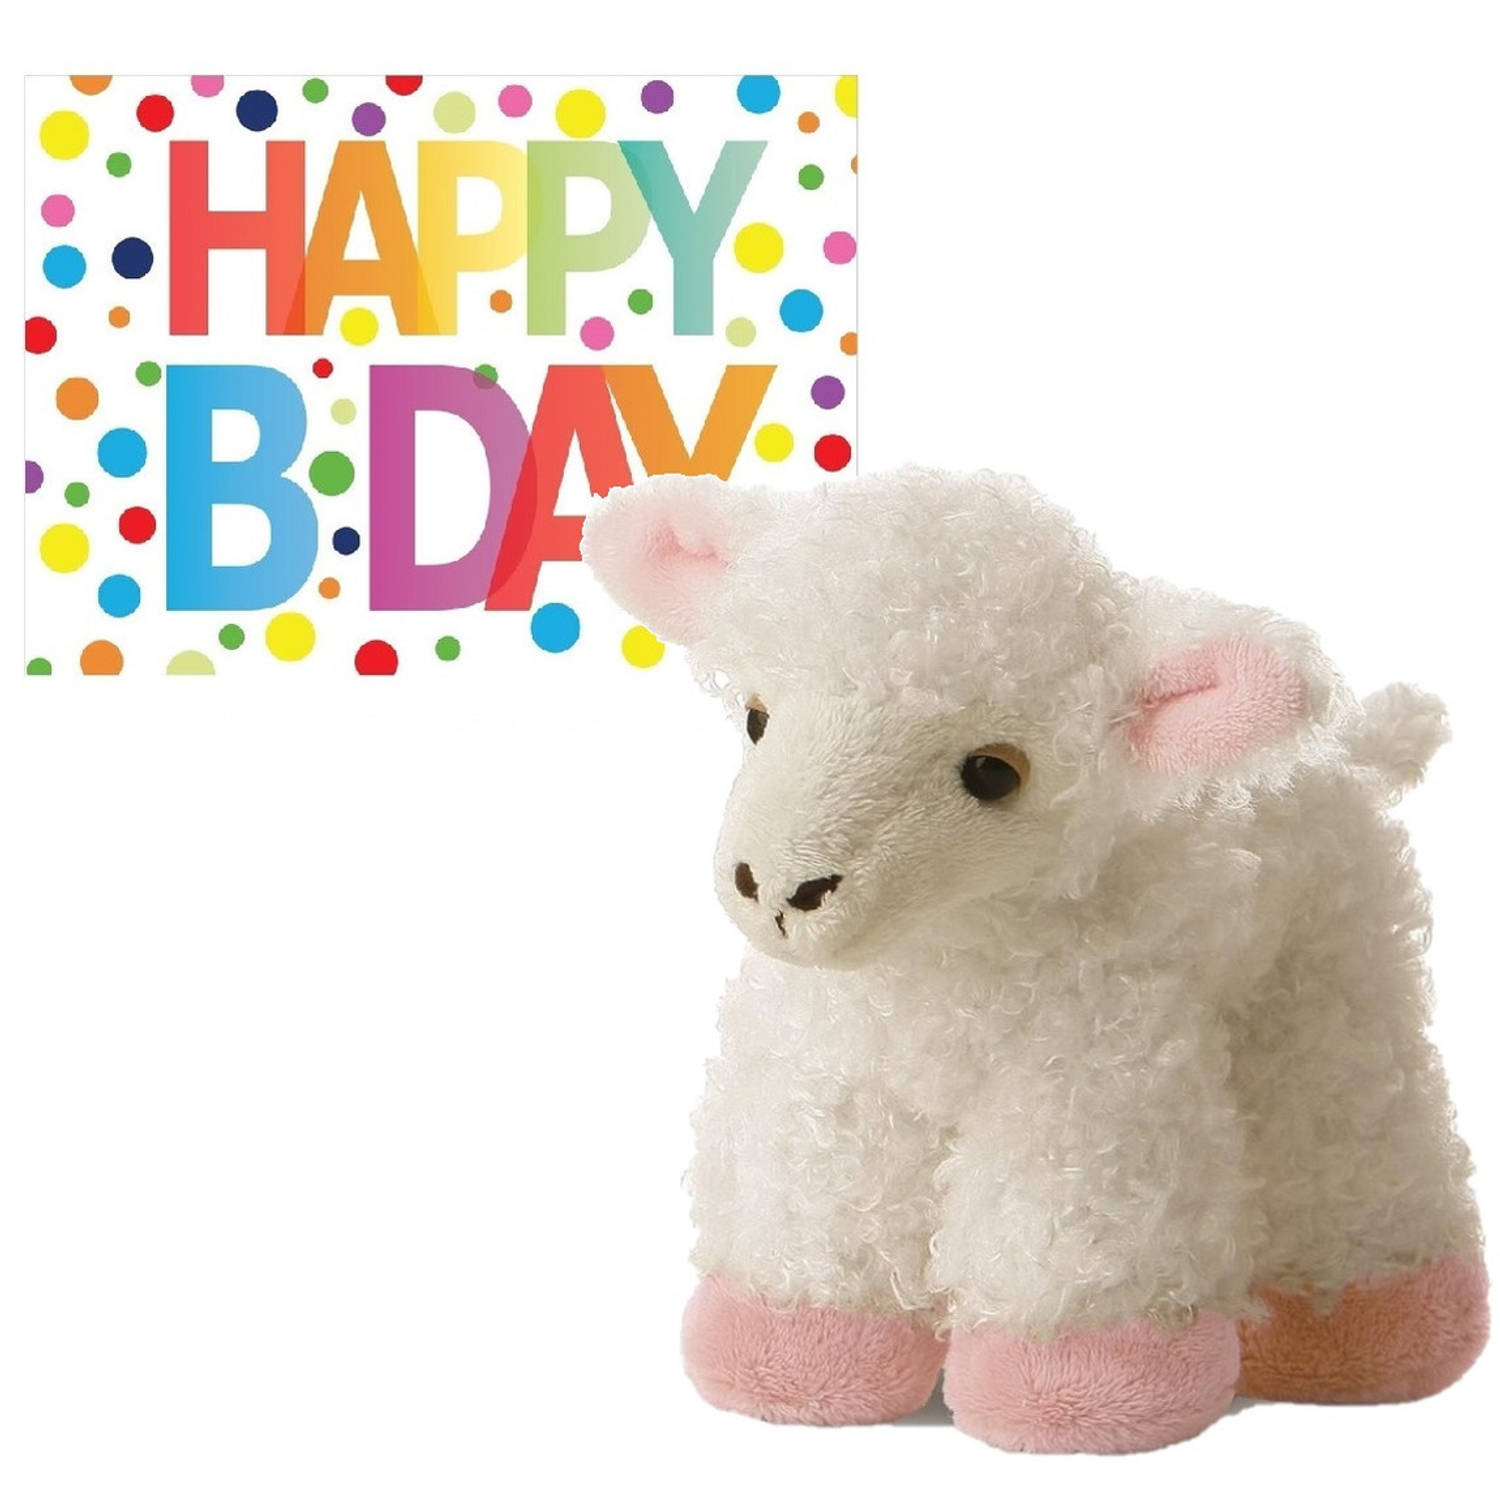 Pluche knuffel lammetje-schaap 20 cm met A5-size Happy Birthday wenskaart Knuffel boederijdieren